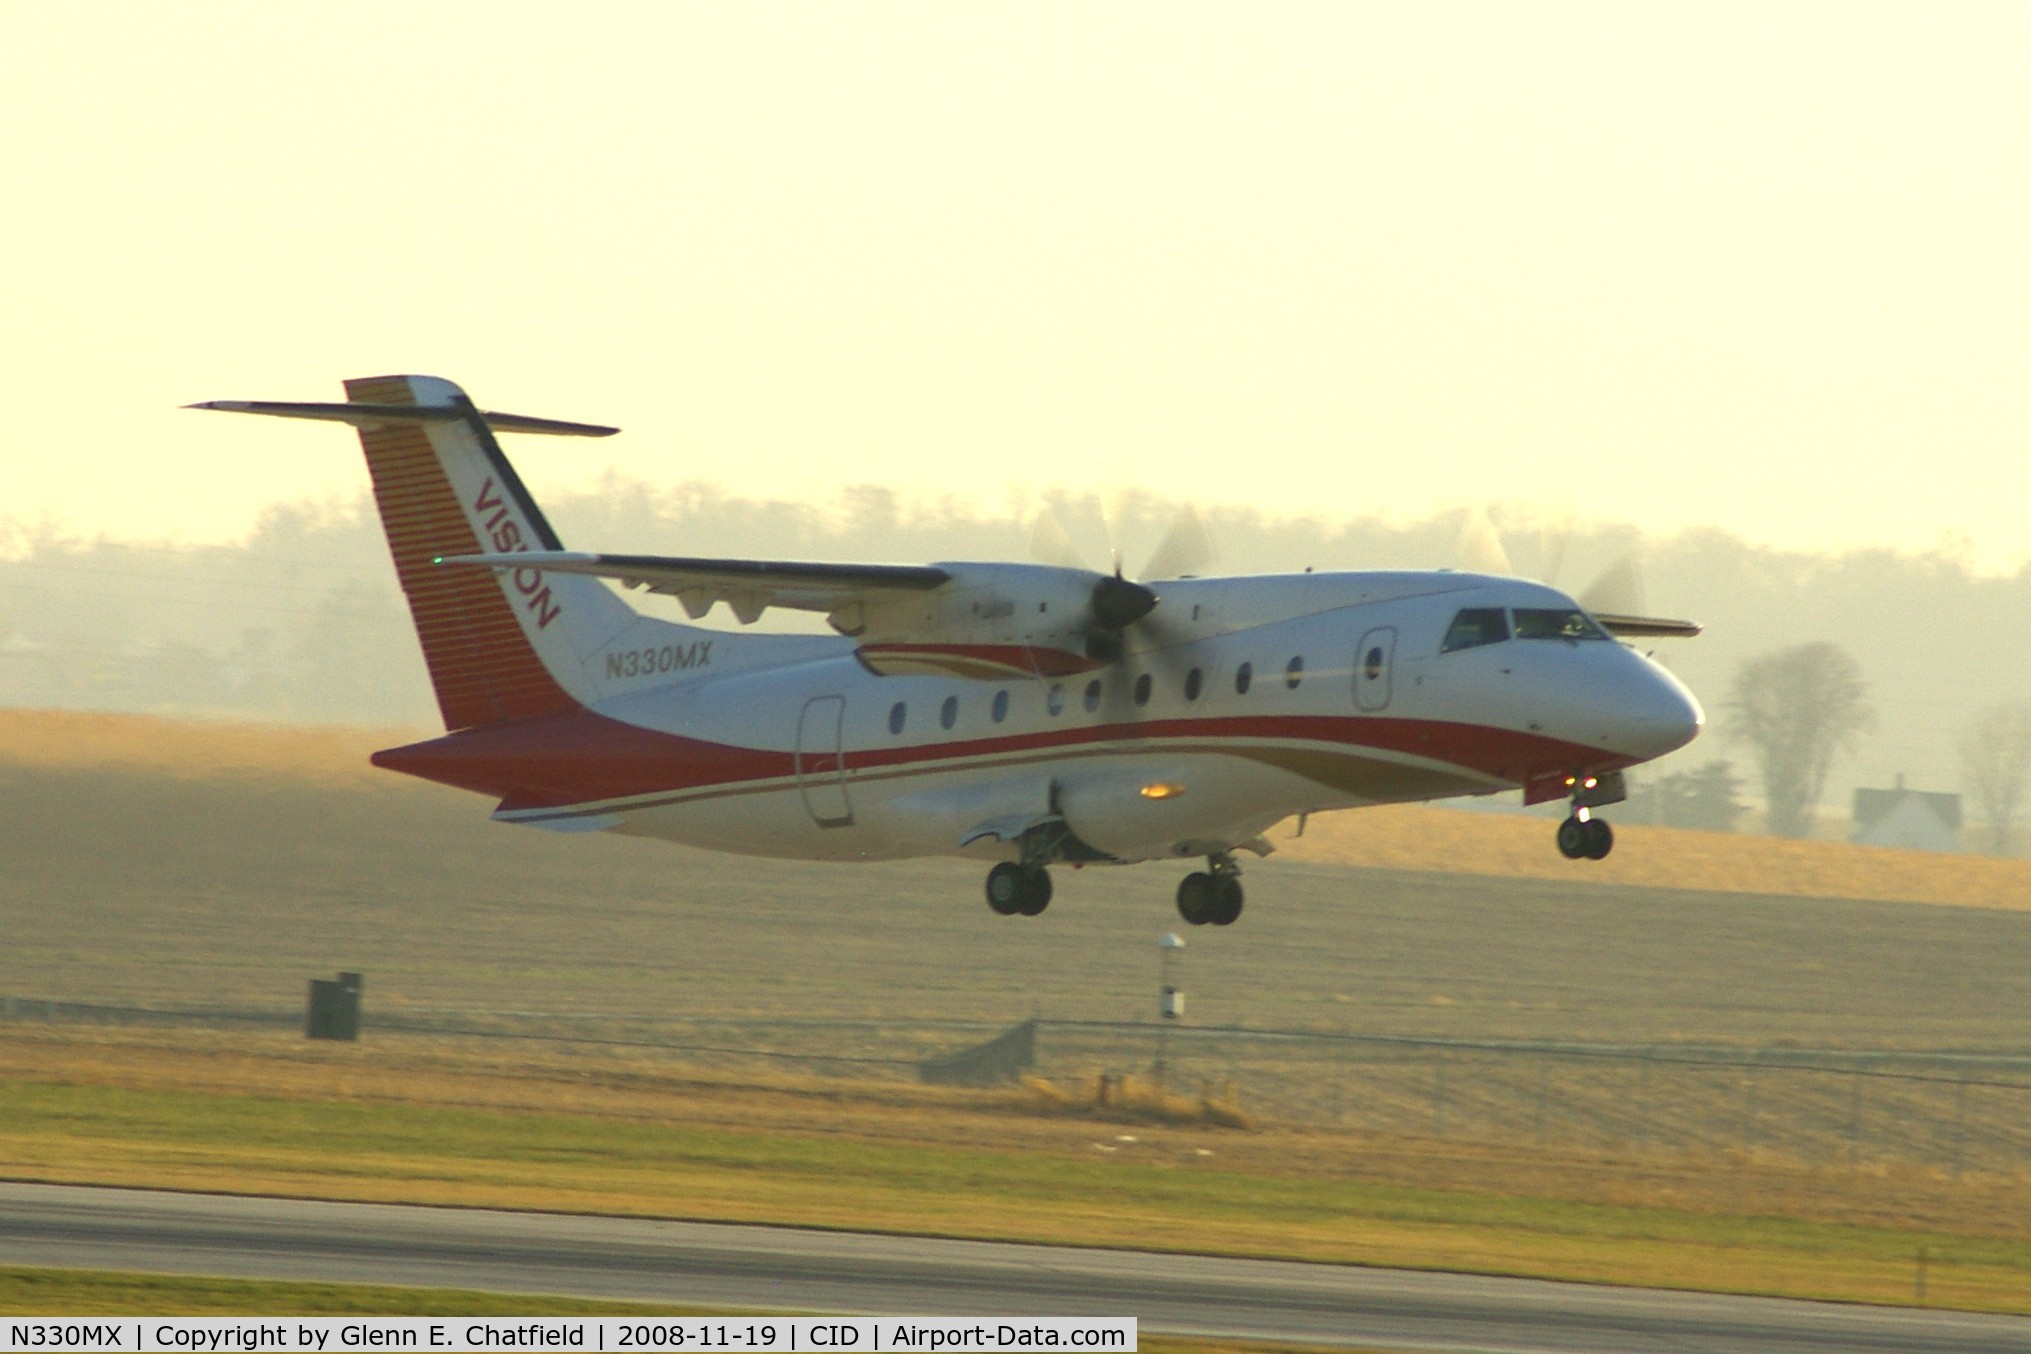 N330MX, 1996 Dornier 328-100 C/N 3067, Departing Runway 13